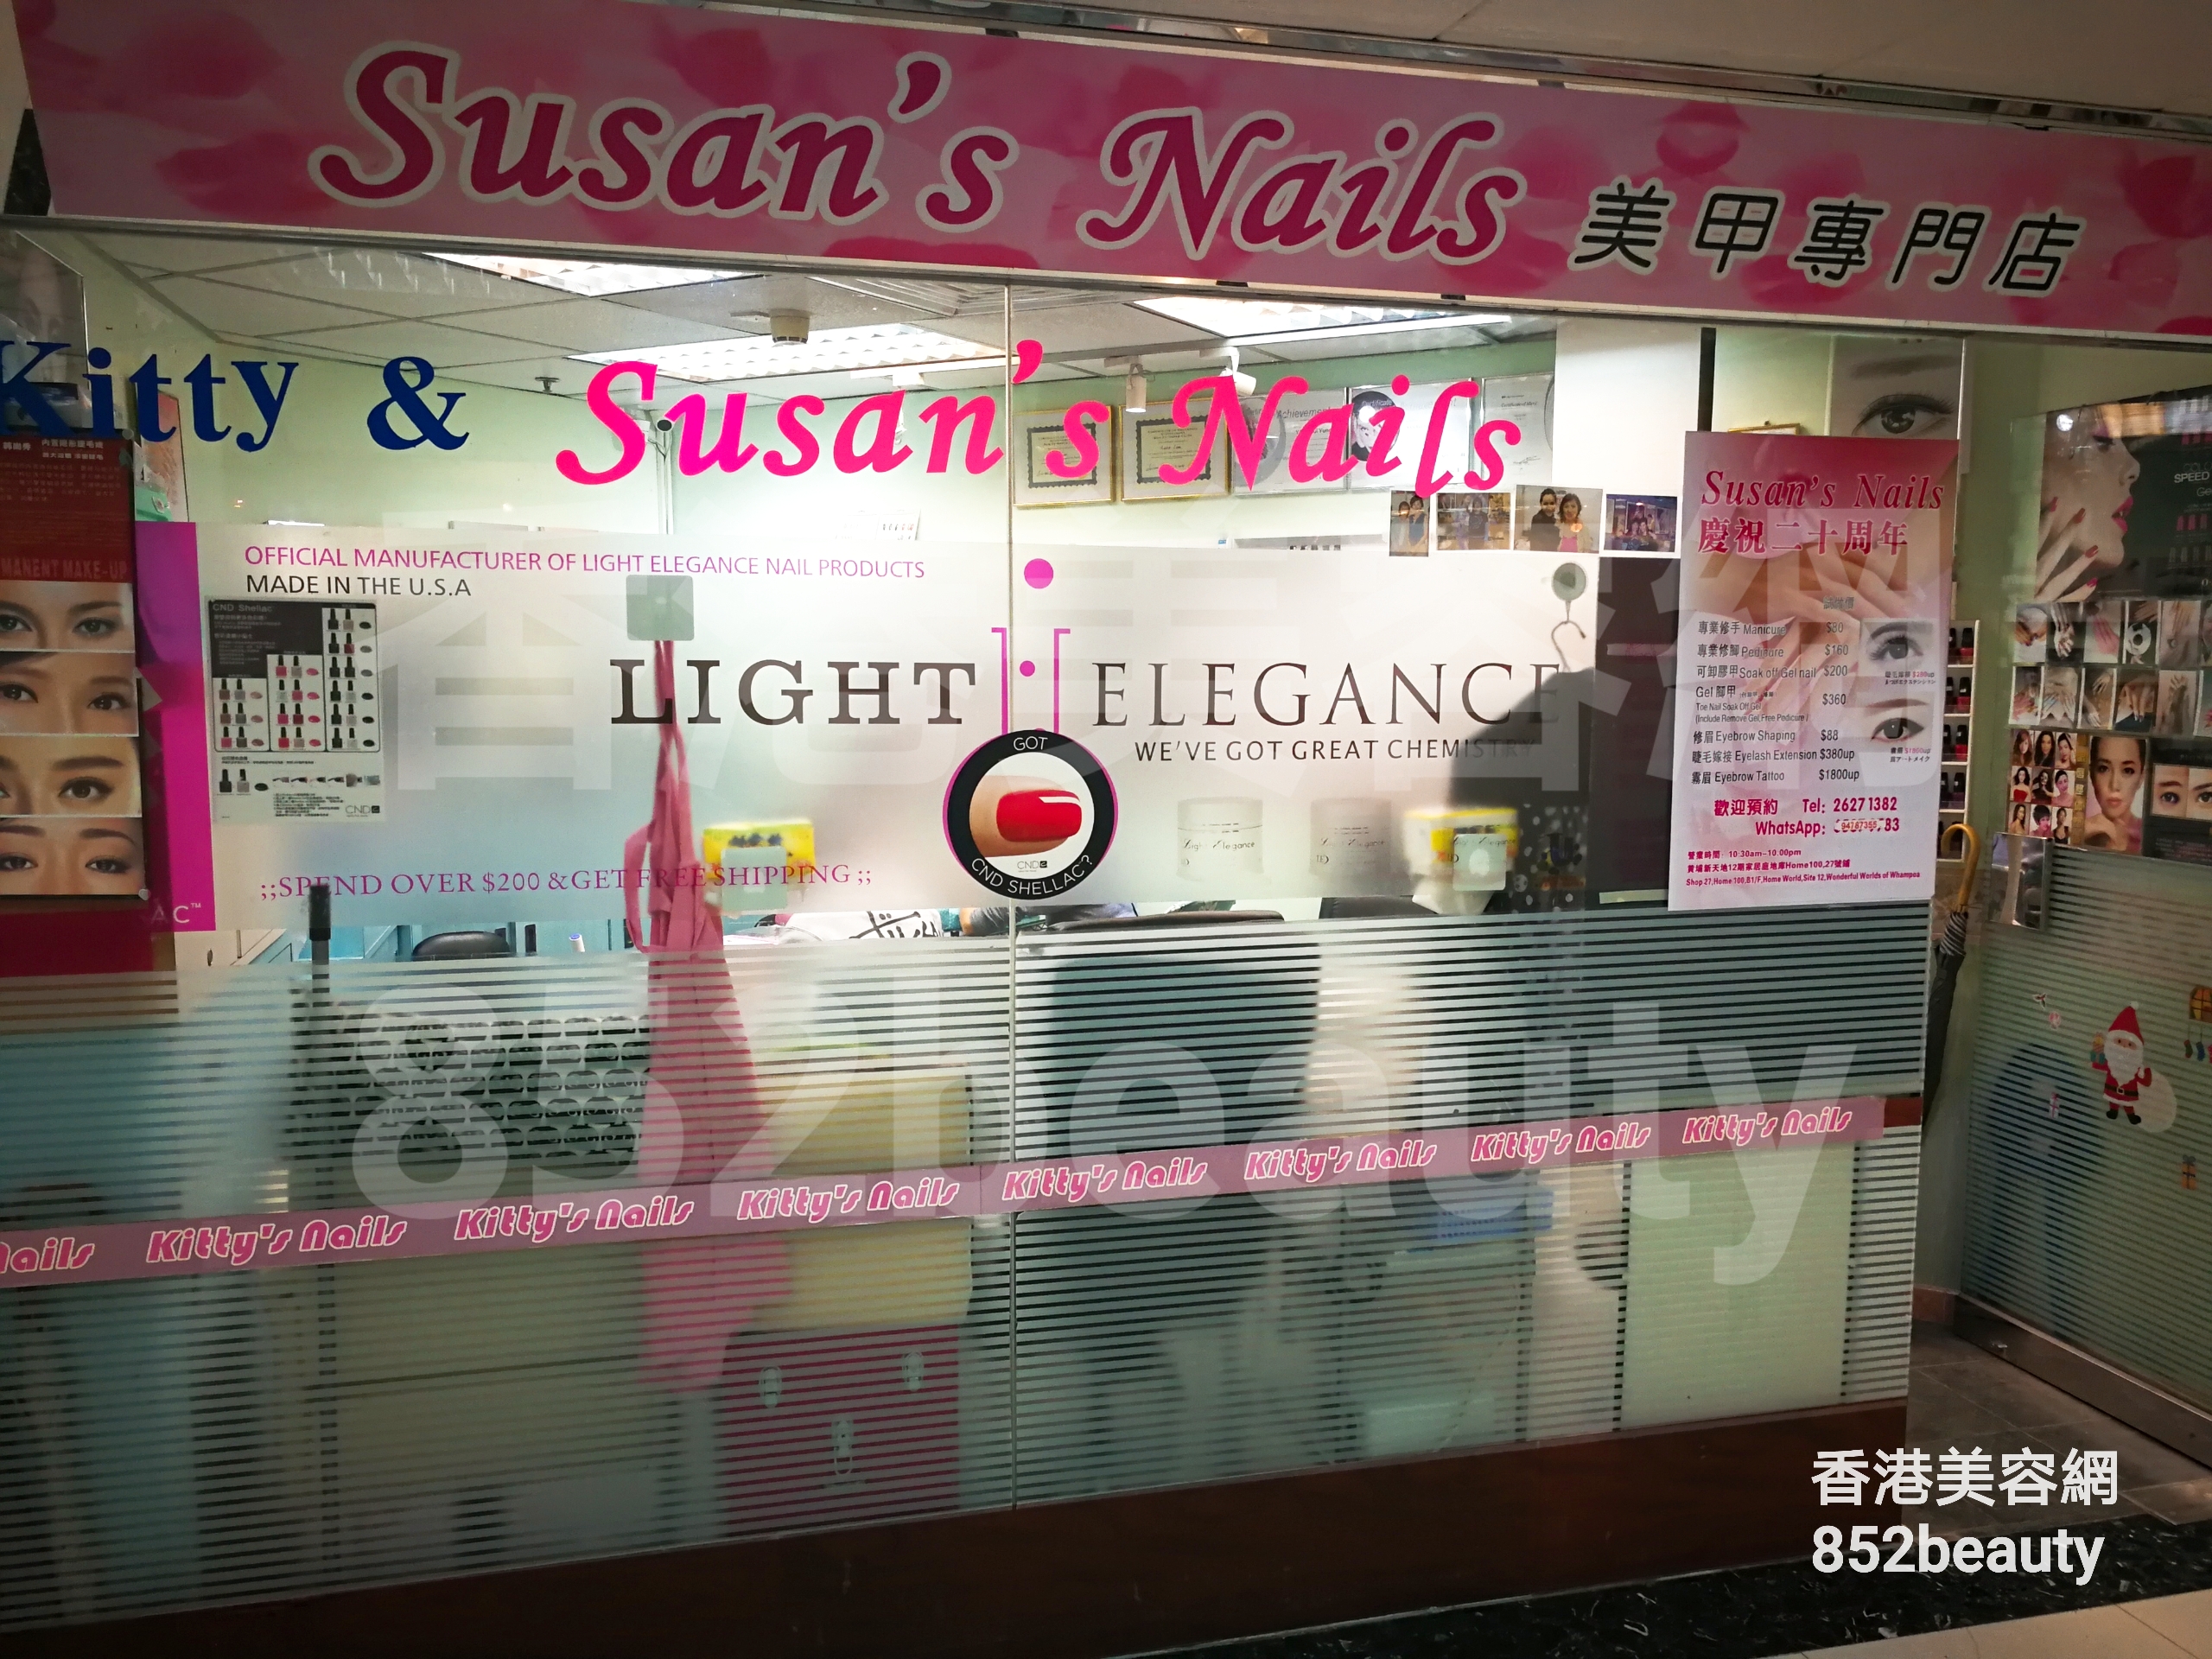 香港美容網 Hong Kong Beauty Salon 美容院 / 美容師: Susan's Nail